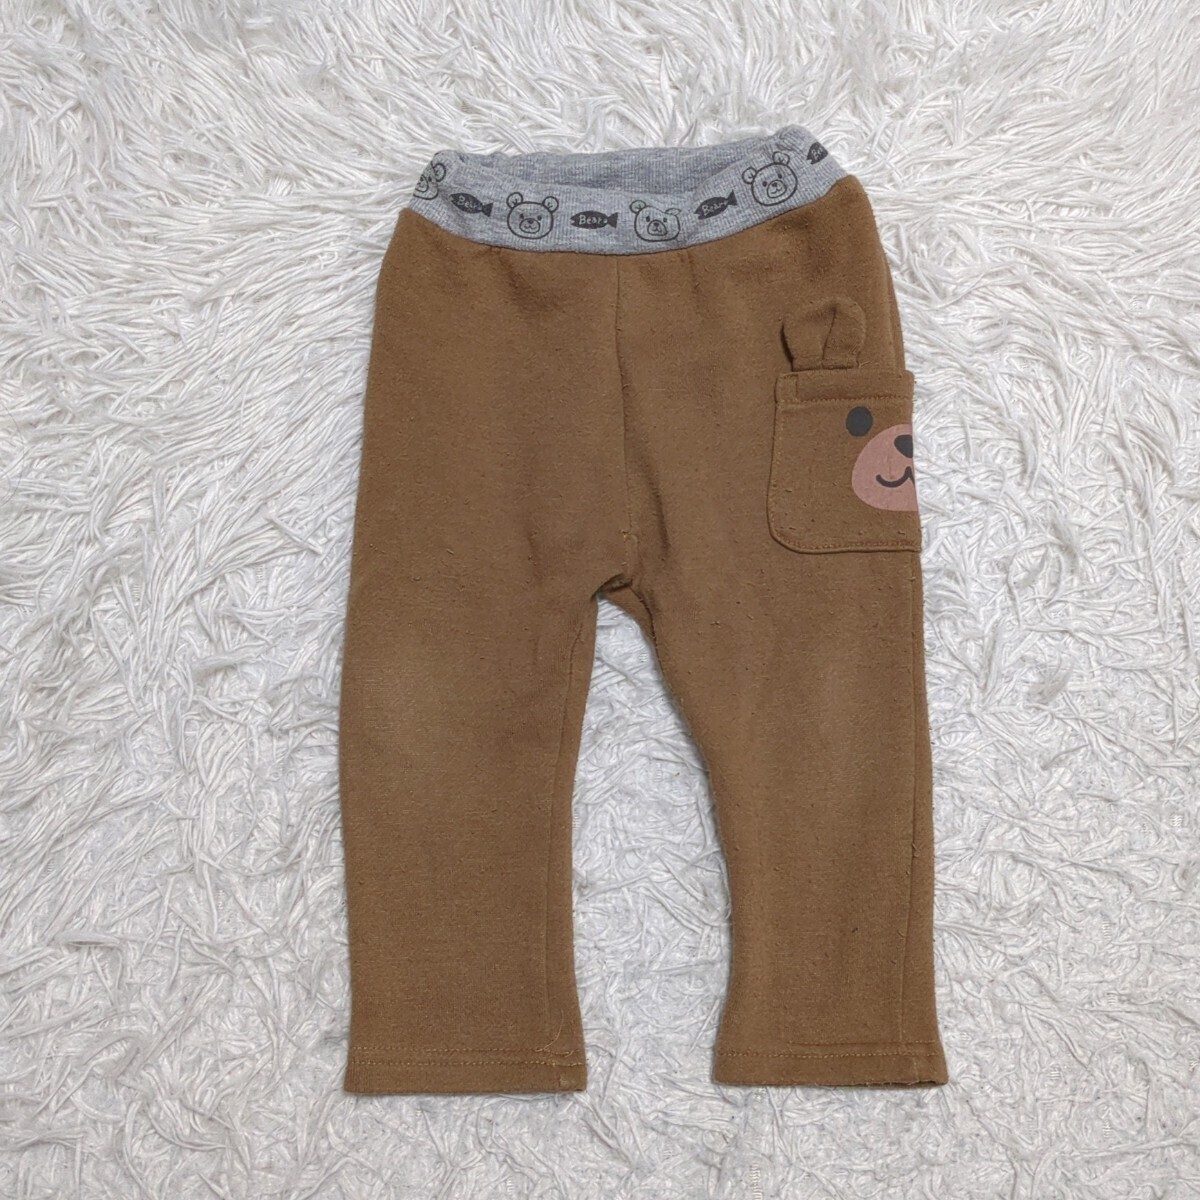 【送料無料】西松屋 スウェット パンツ 80cm くま ウエストゴム ベビー 子供服の画像1